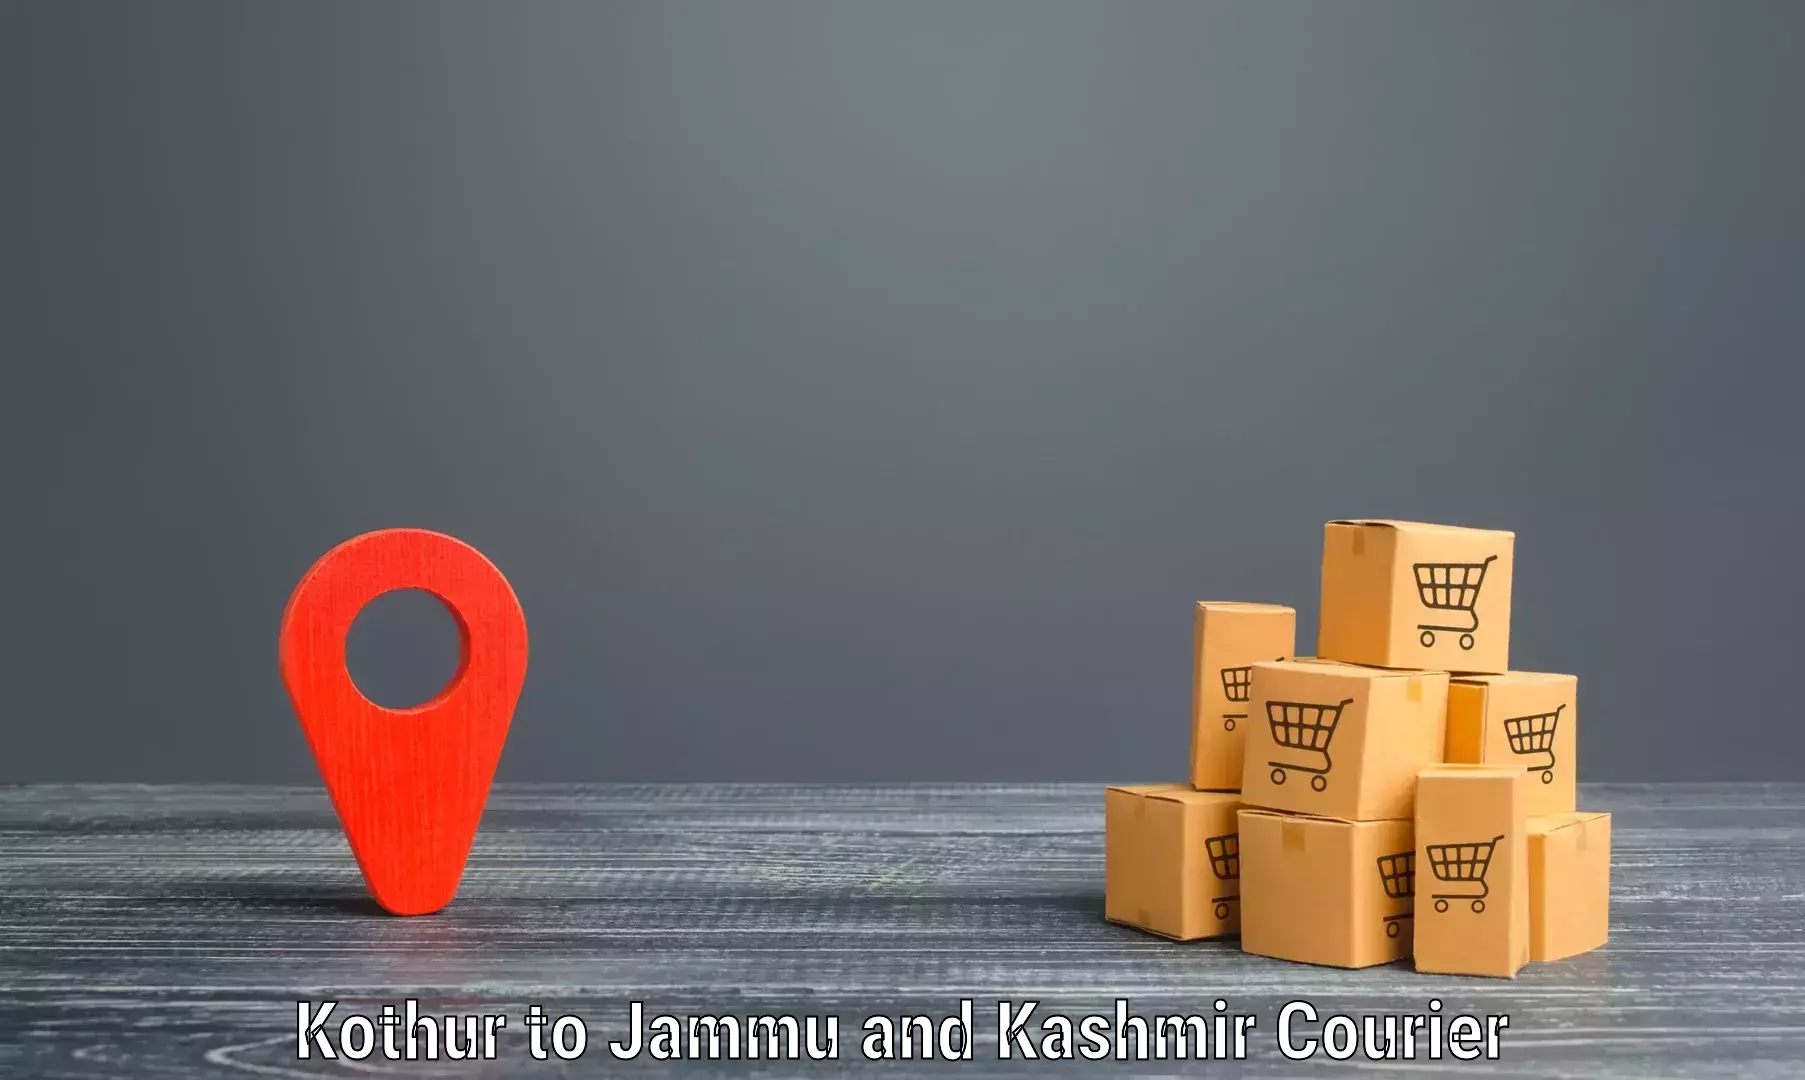 Large package courier in Kothur to Srinagar Kashmir